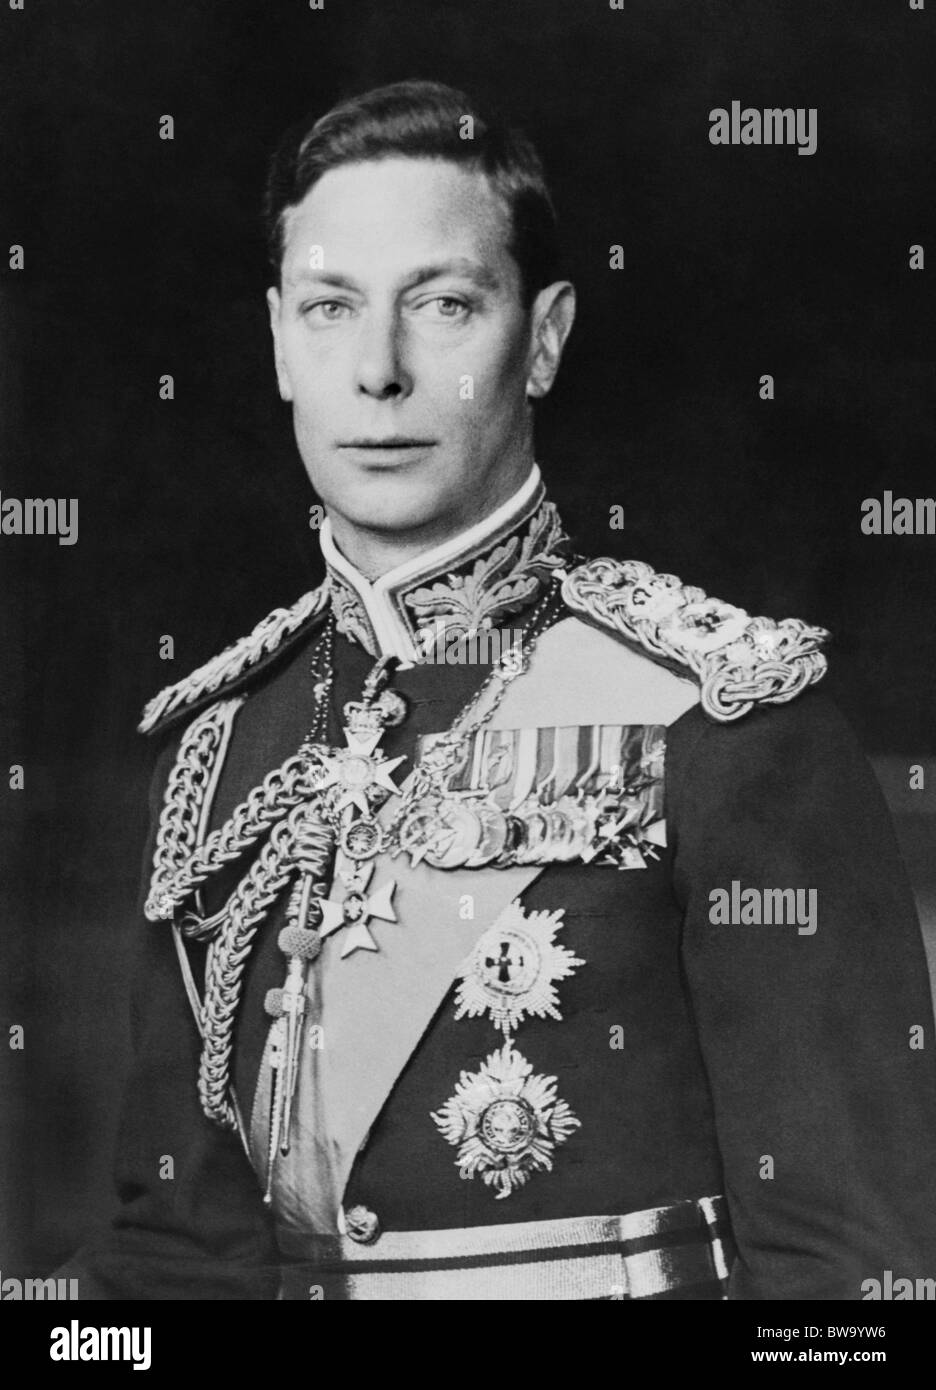 Porträt-Foto-c1940s von George VI (1895-1952) - König des Vereinigten Königreichs vom 11. Dezember 1936 bis zu seinem Tod im Jahre 1952. Stockfoto